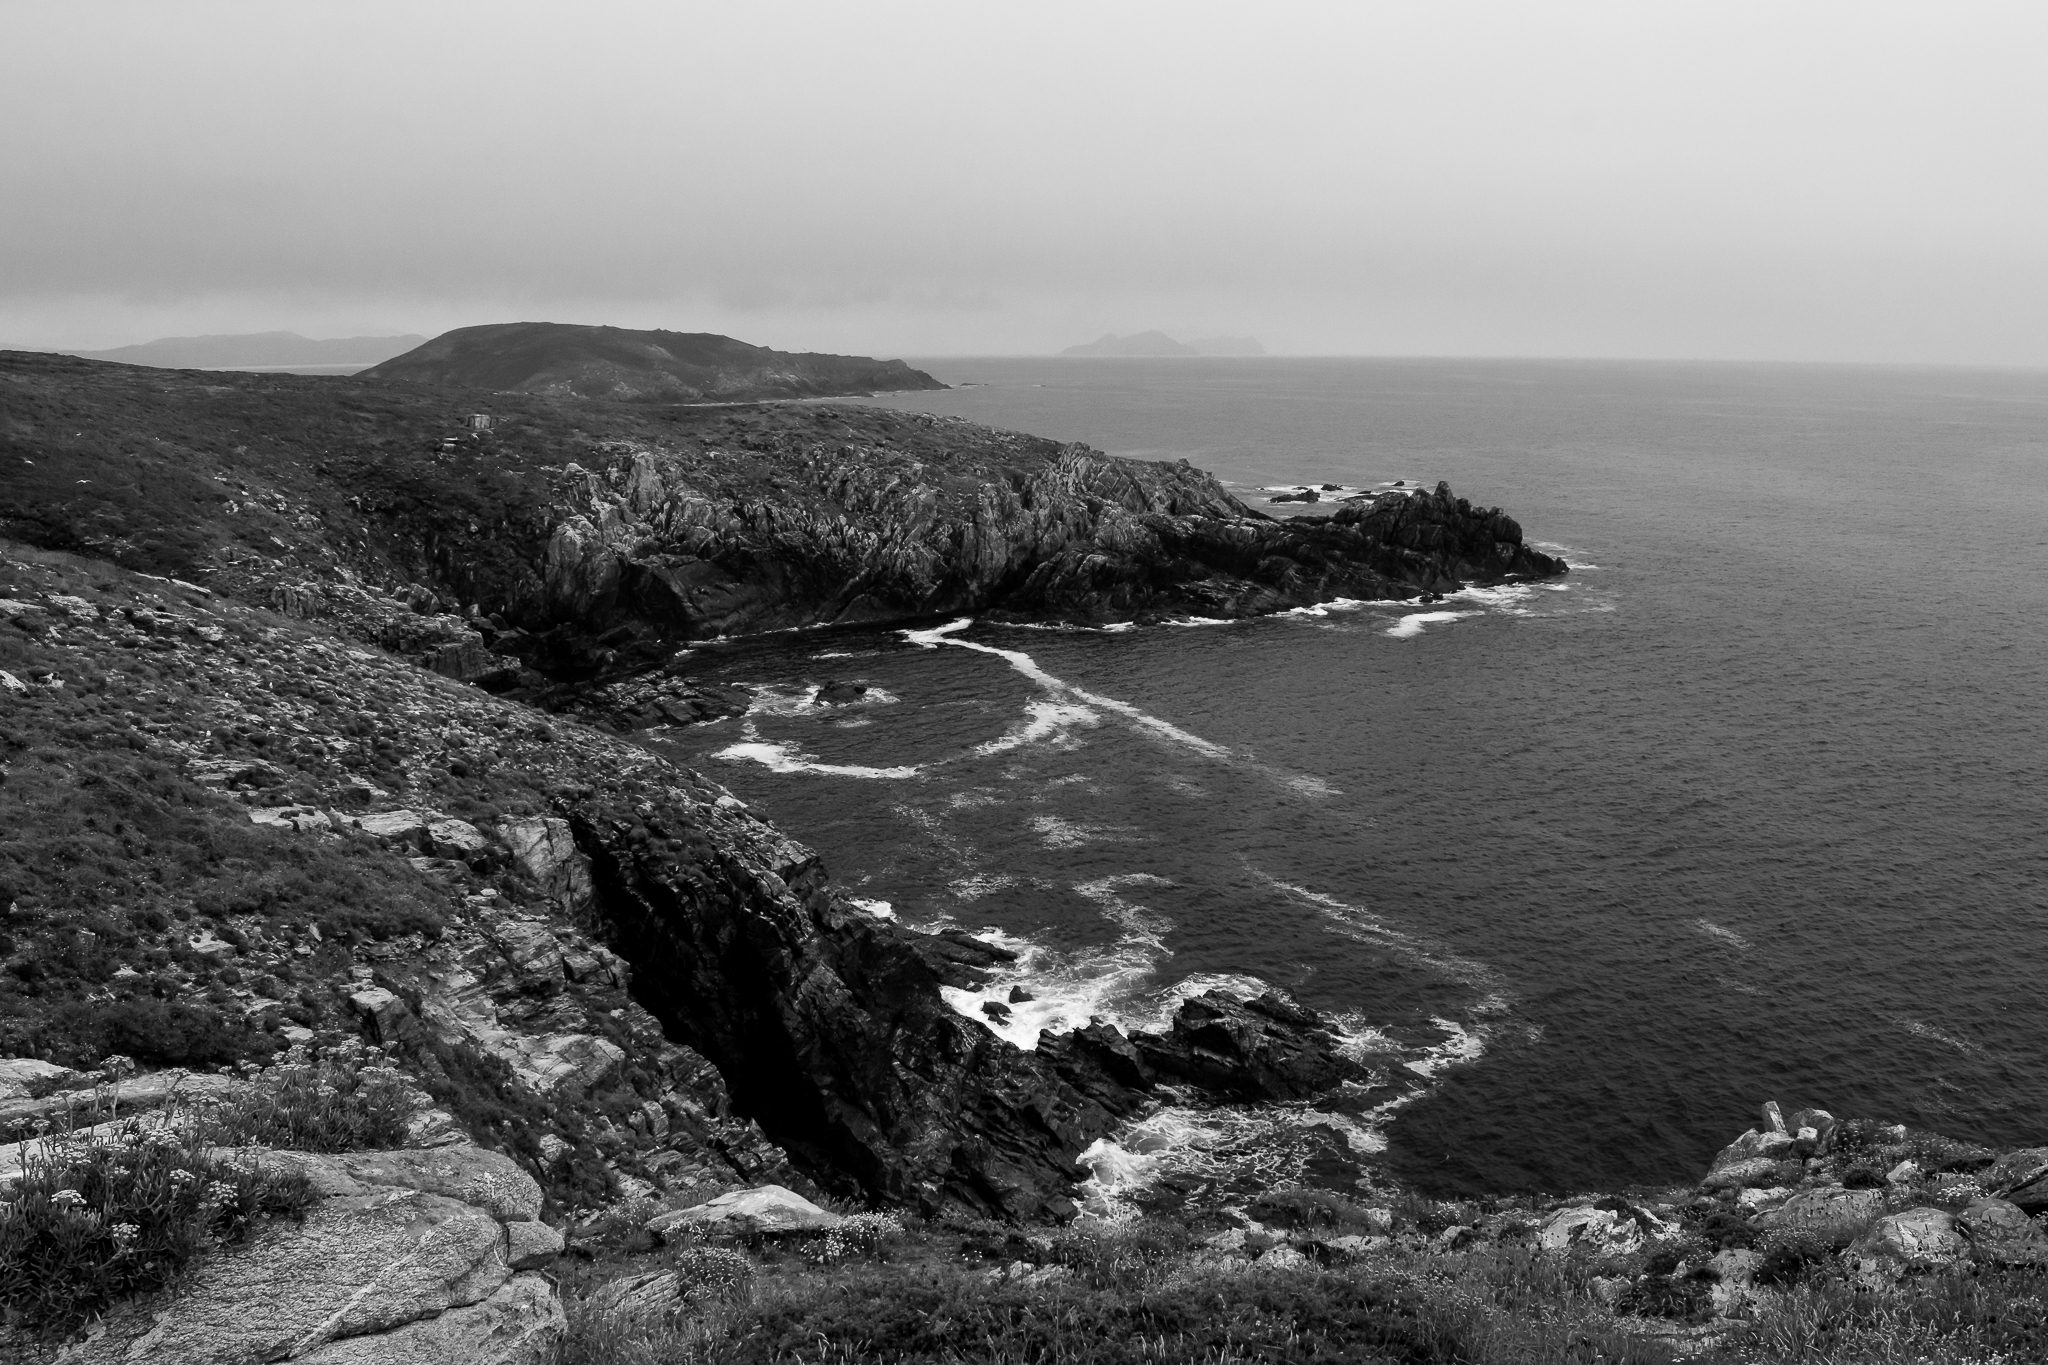 El archipiélago de Ons está conformado por las islas de Ons y Onceta y forma parte de el Parque Nacional Illas Atlánticas de Galicia. Actualmente aún conserva población durante todo el año y se caracteriza por sus arenales y los acantilados a lo largo de toda su costa.